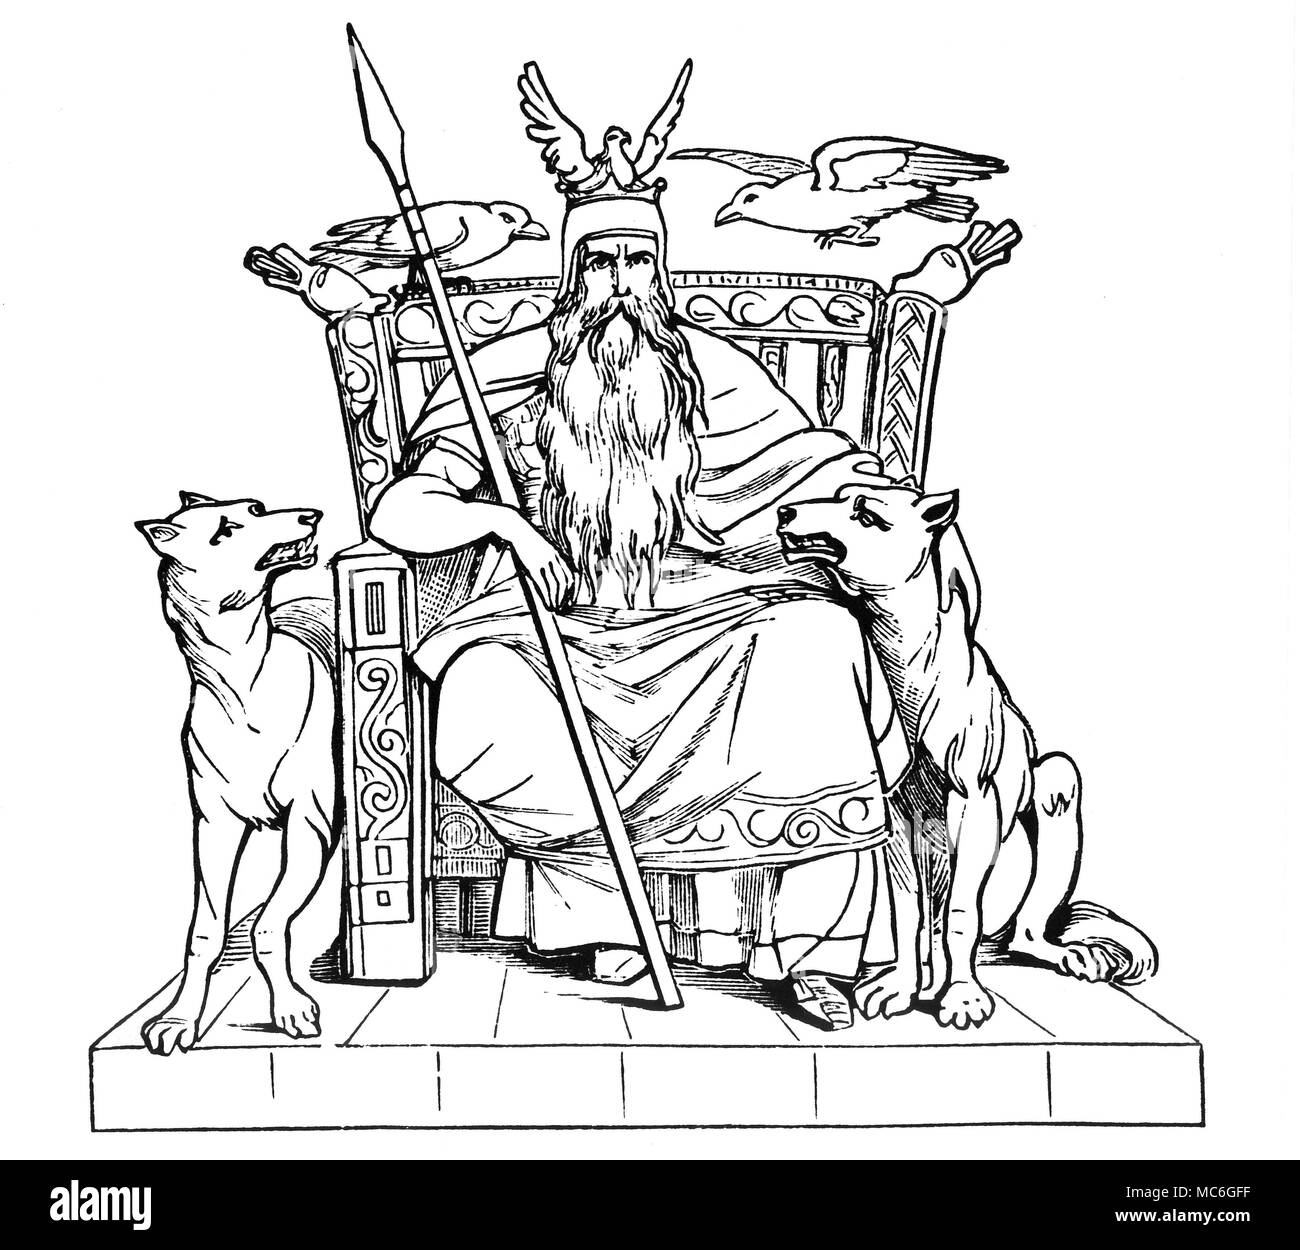 La mythologie germanique - ODIN Le dieu Odin avec ses créatures, nous rappelant qu'il était à l'origine un chef du clan du Corbeau. Odin était le dieu des morts, célèbre pour sa ruse et sagesse : c'est lui qui, à travers de grandes souffrances personnelles, a introduit le runes magiques à l'humanité. 19e siècle bois-gravure. Banque D'Images